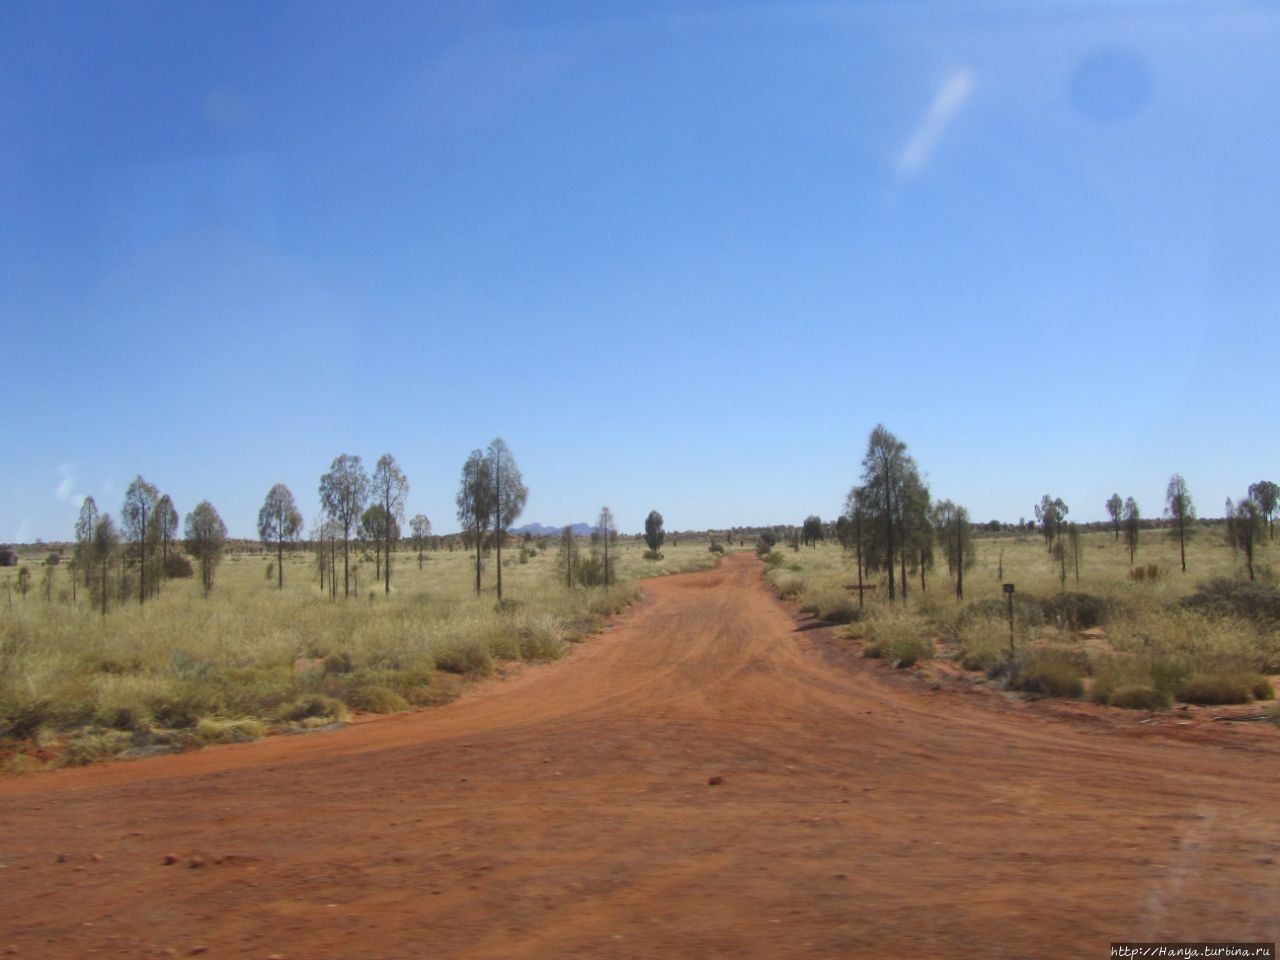 Ката Тьюта (Ольгас) Улуру — Ката-Тьюта Национальный Парк, Австралия